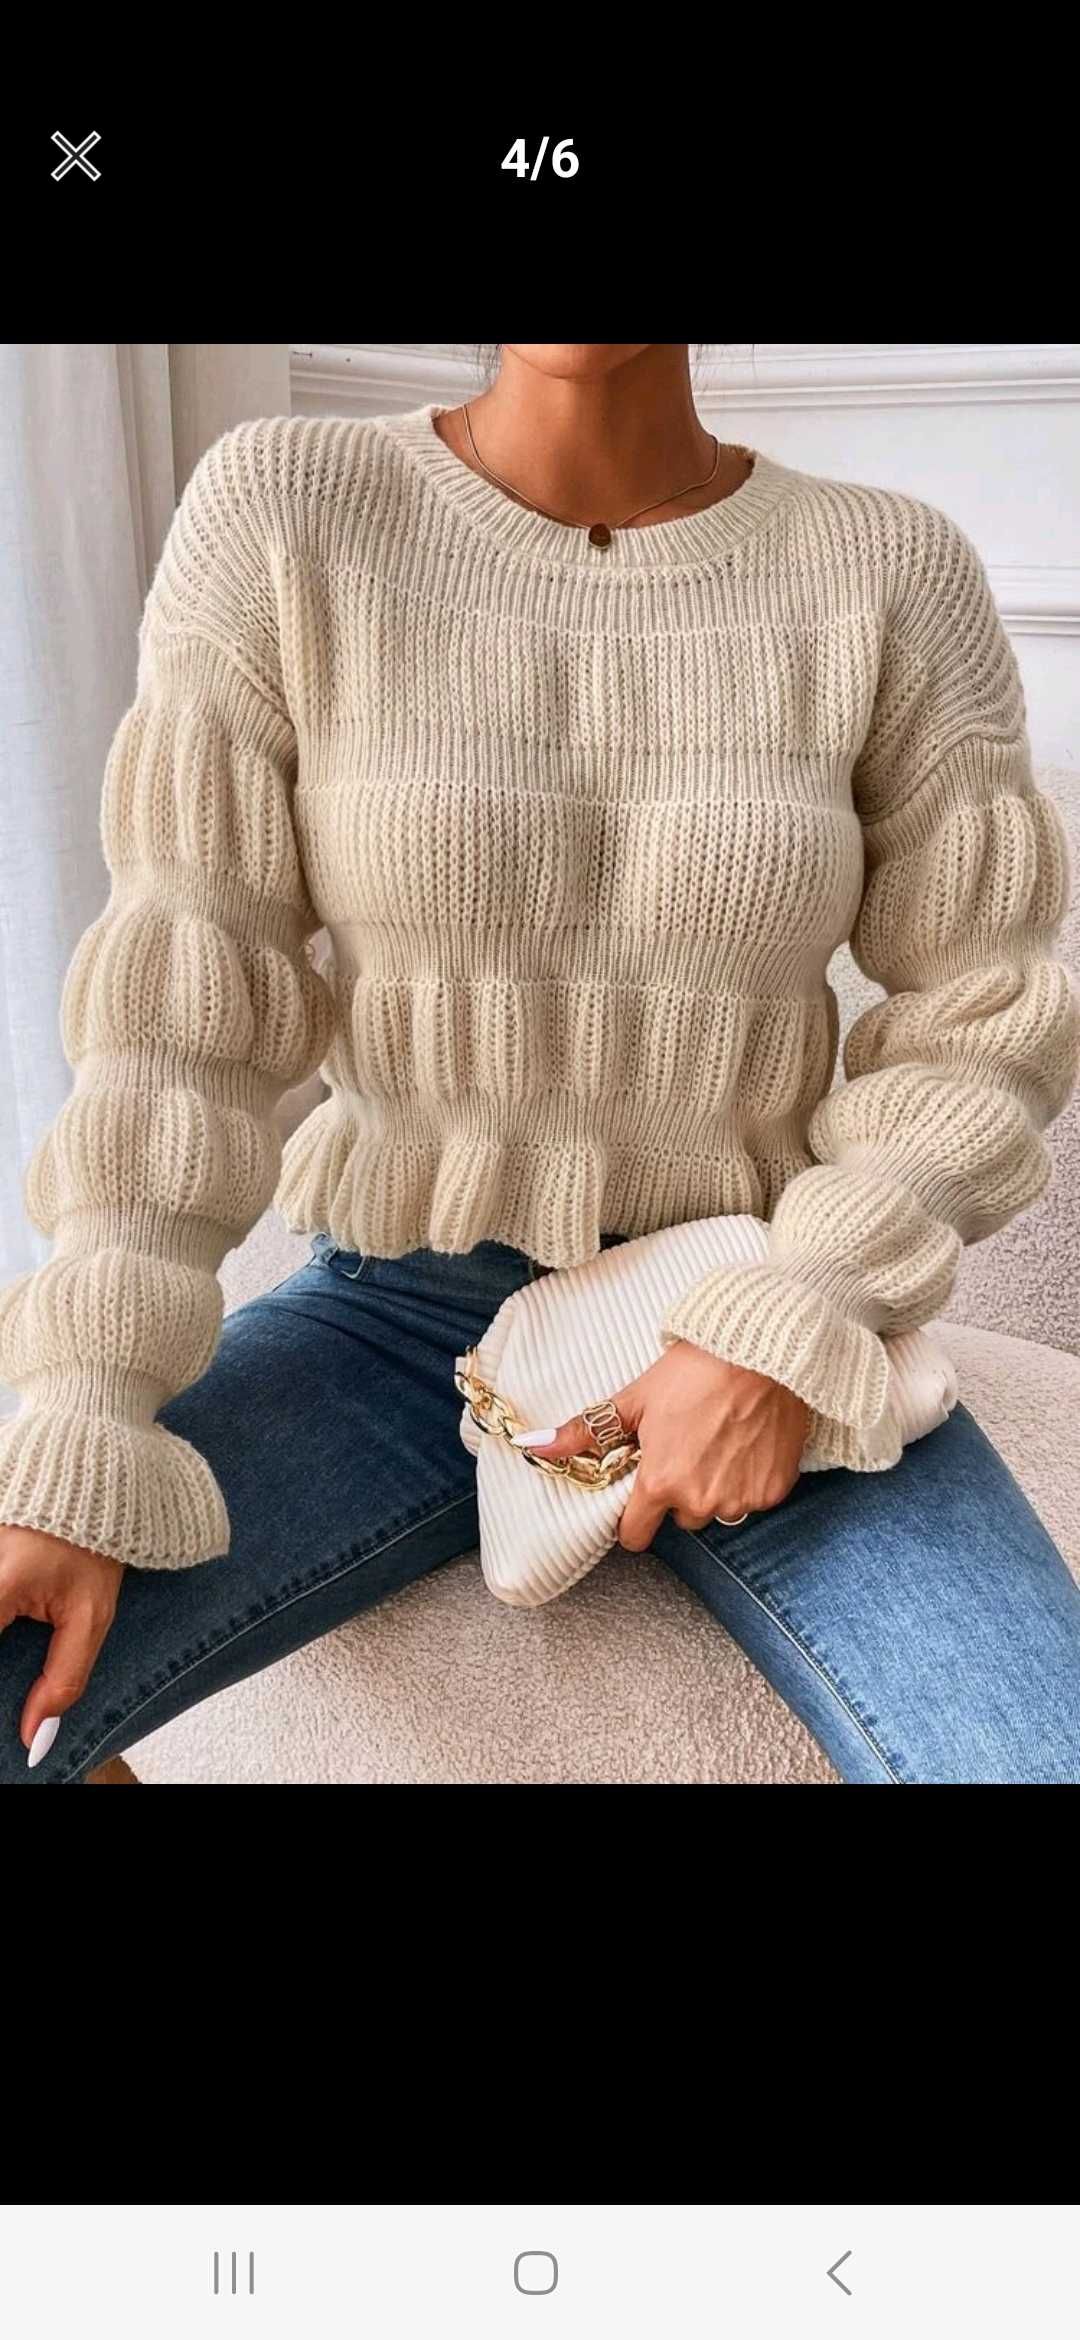 Nowy sweter damski beżowy oversize modny sweterek kremowy ecru 36